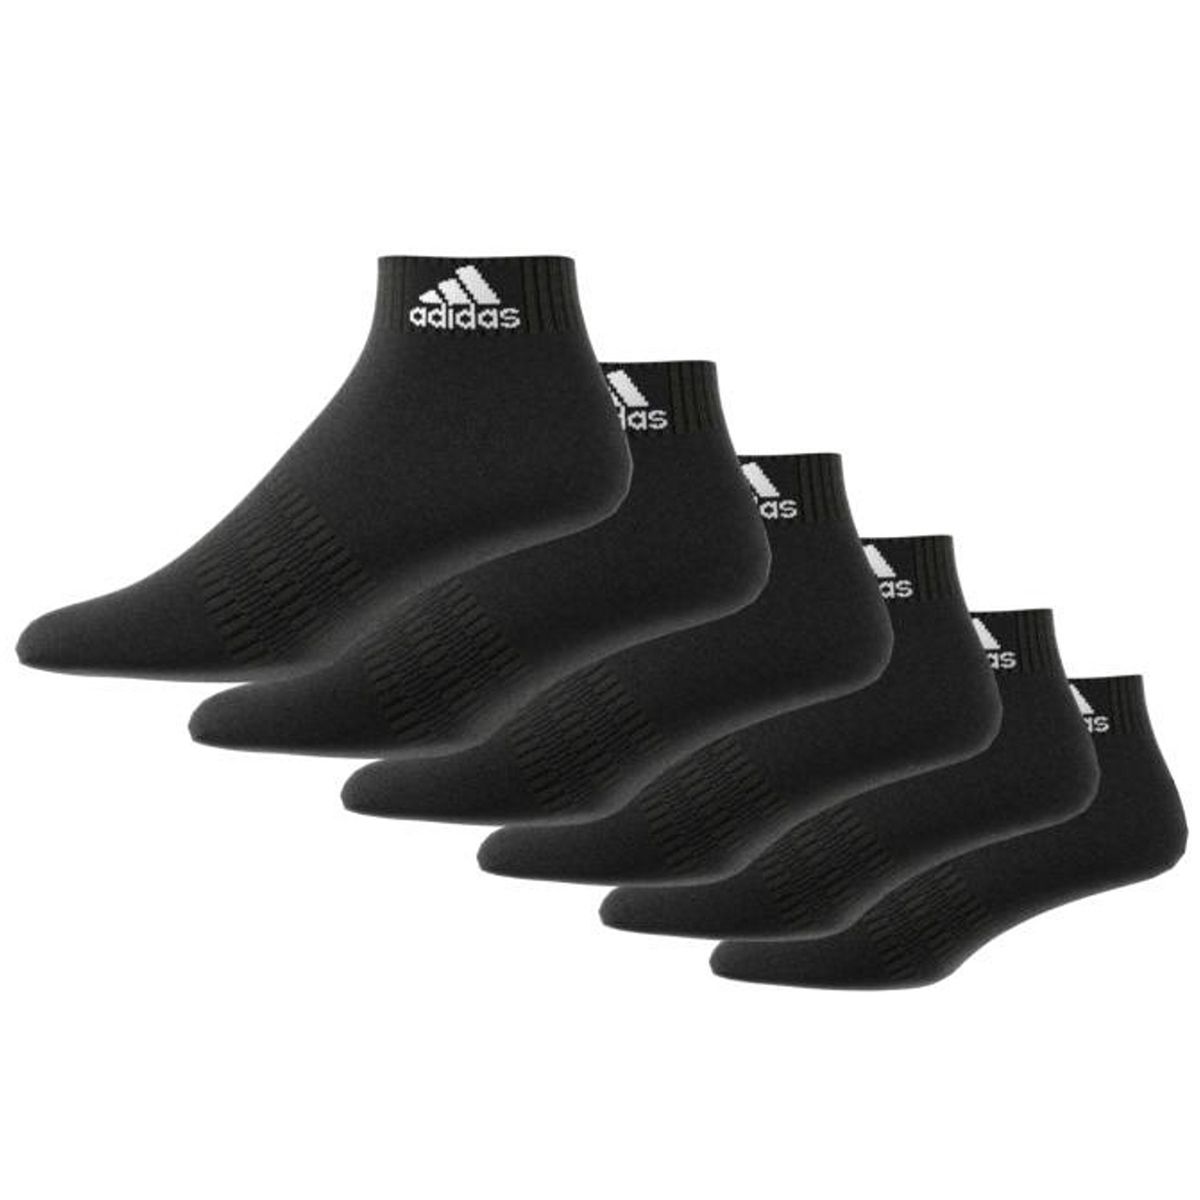 adidas Cushioned Ankle Socks x 6 DZ9363